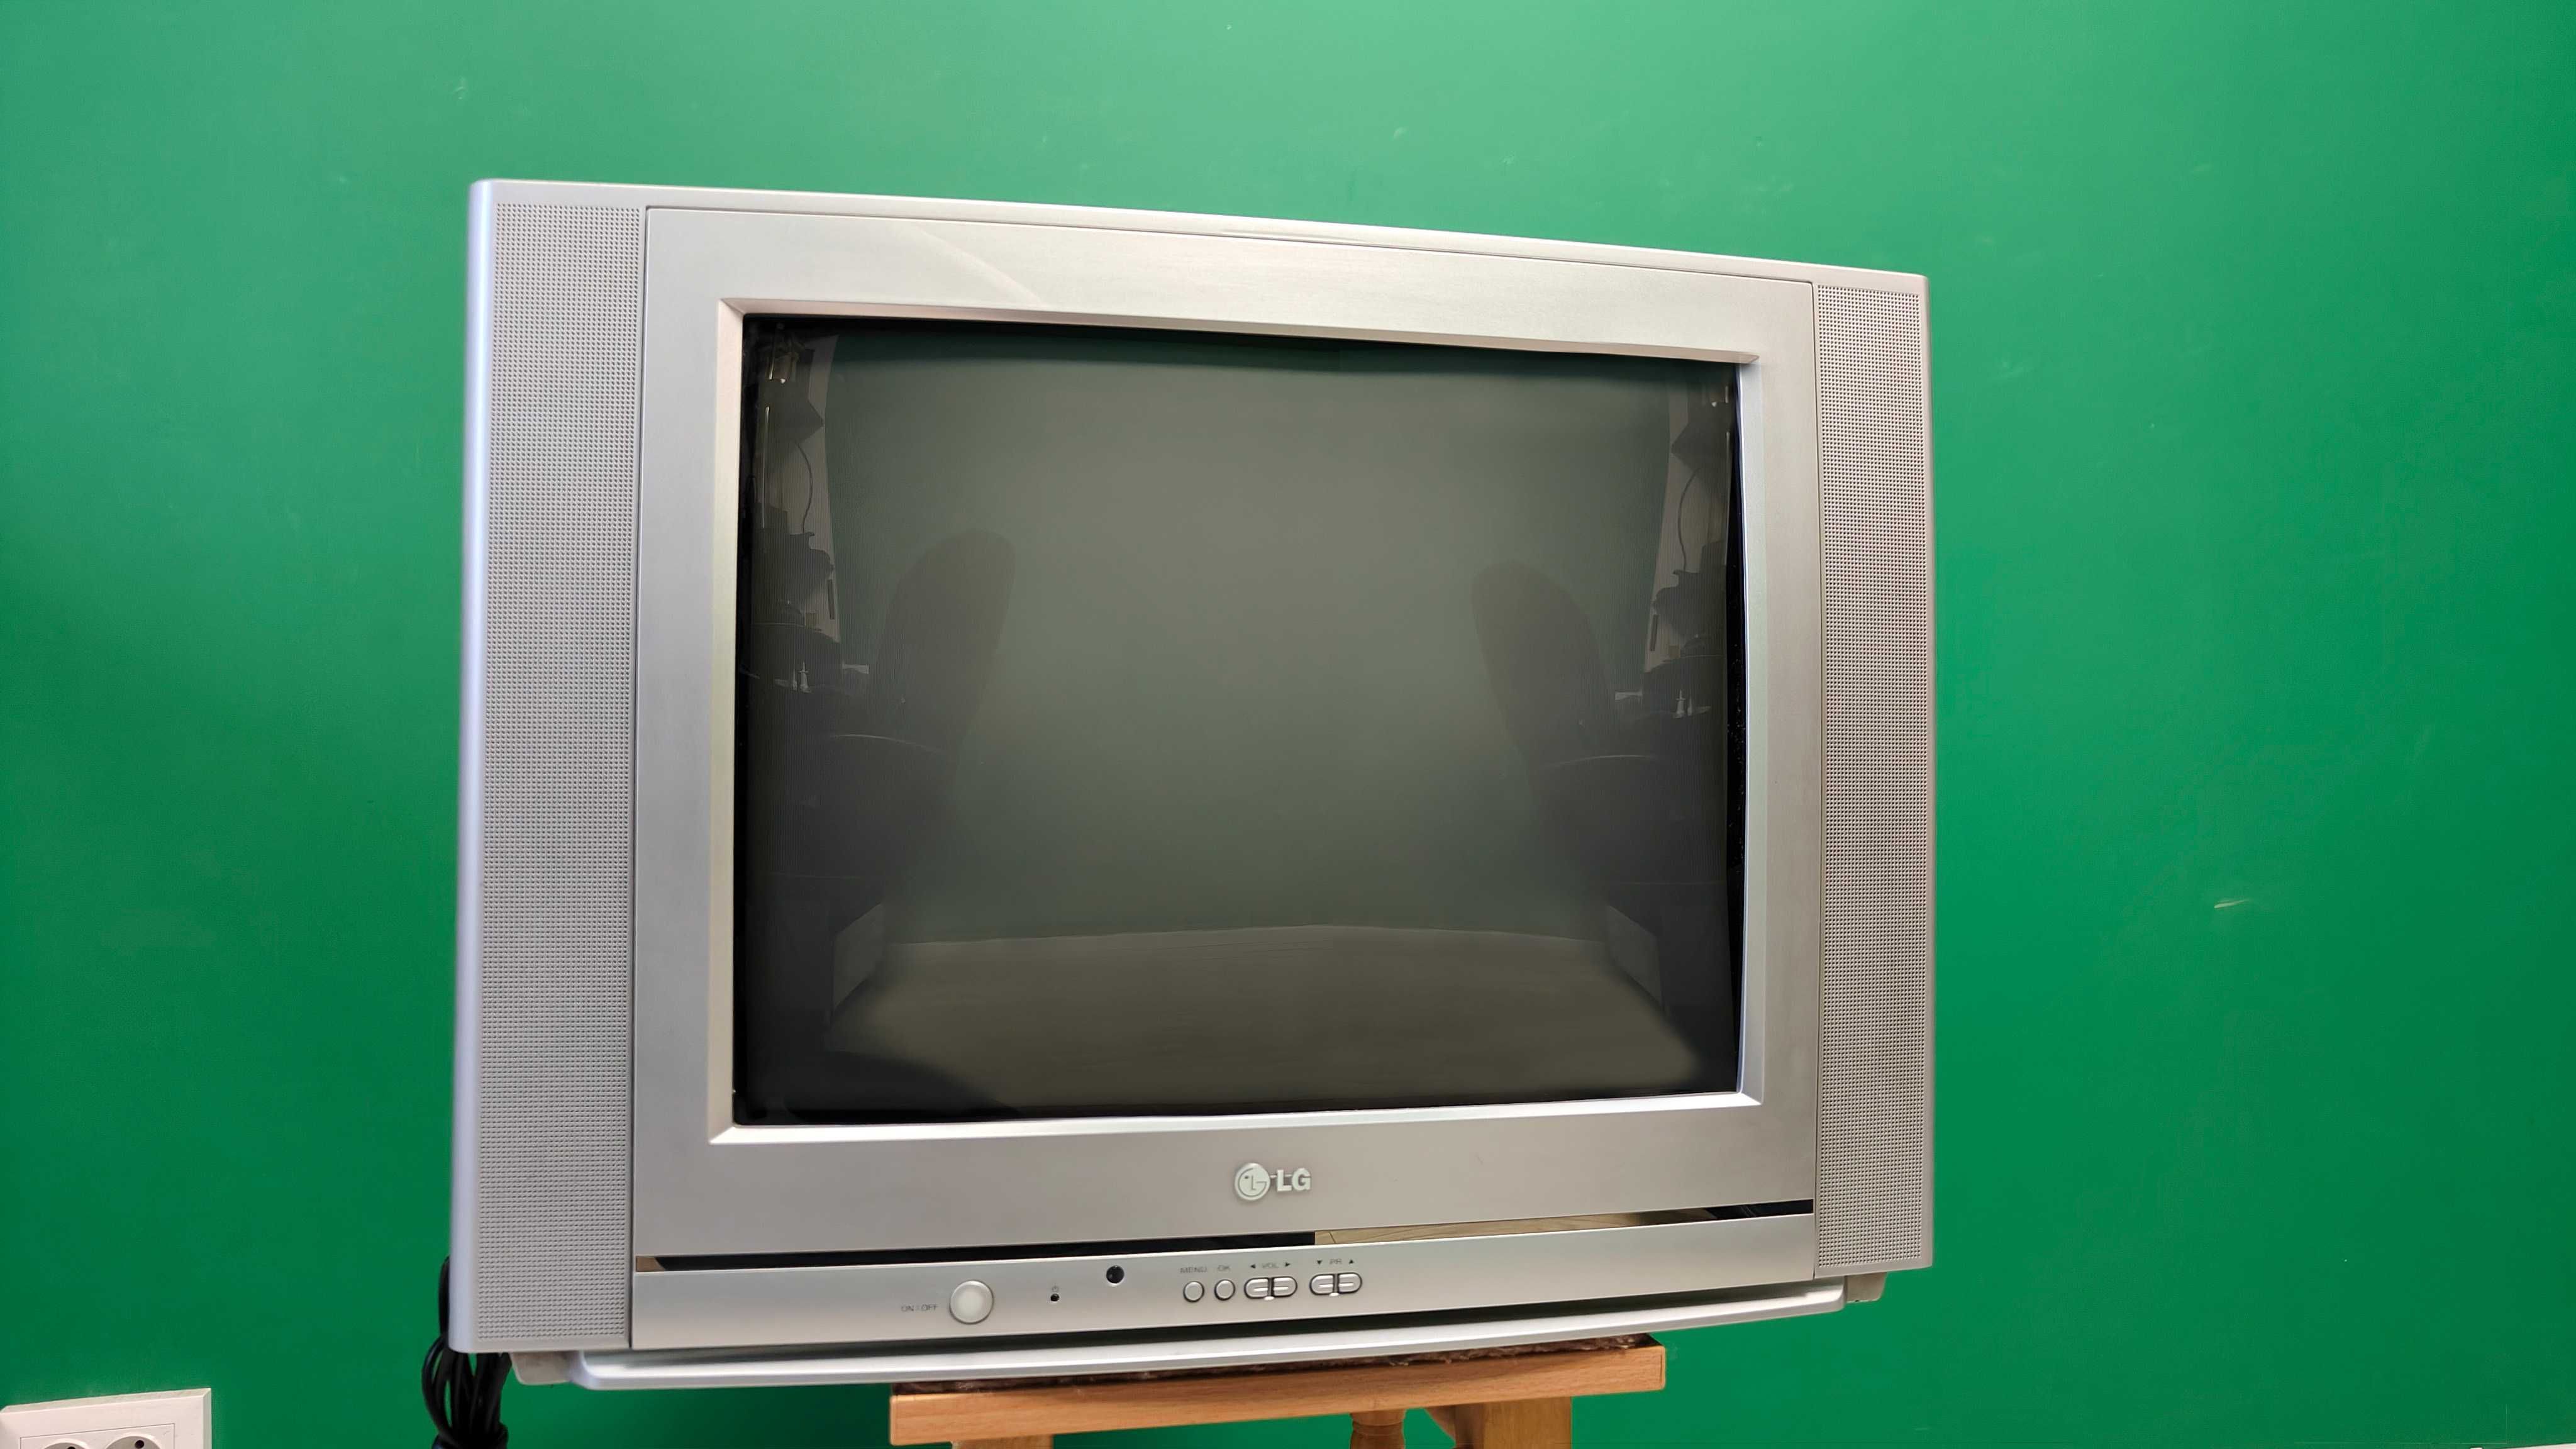 Телевізор LG RT-21CC25M на стройку, дежурку, будову